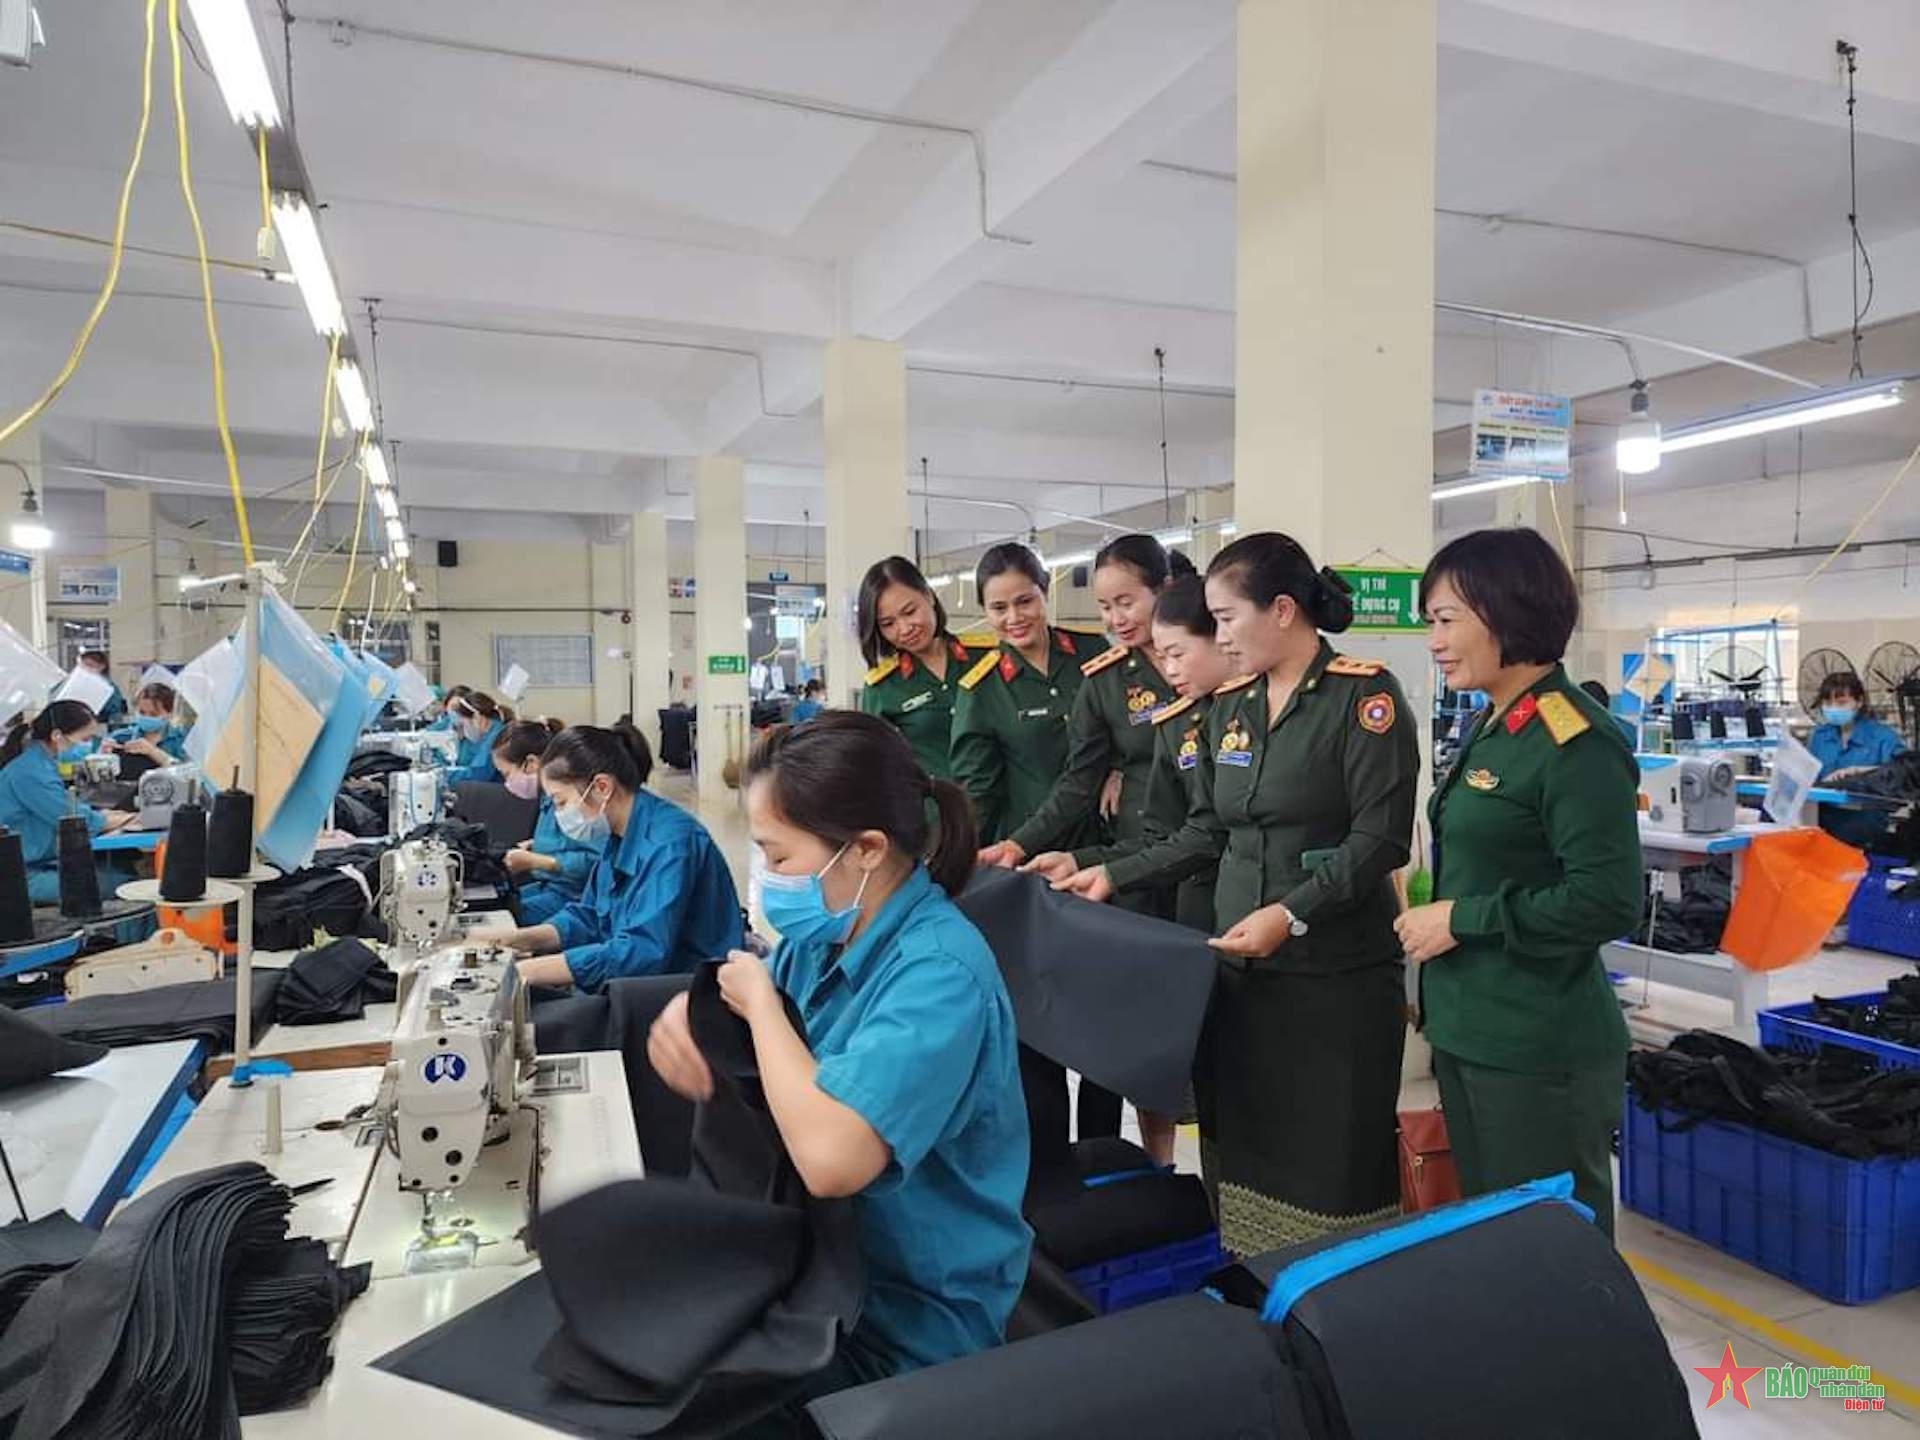 老挝人民军队妇女培训班学员参观Z176厂的生产模型。图自人民军队报